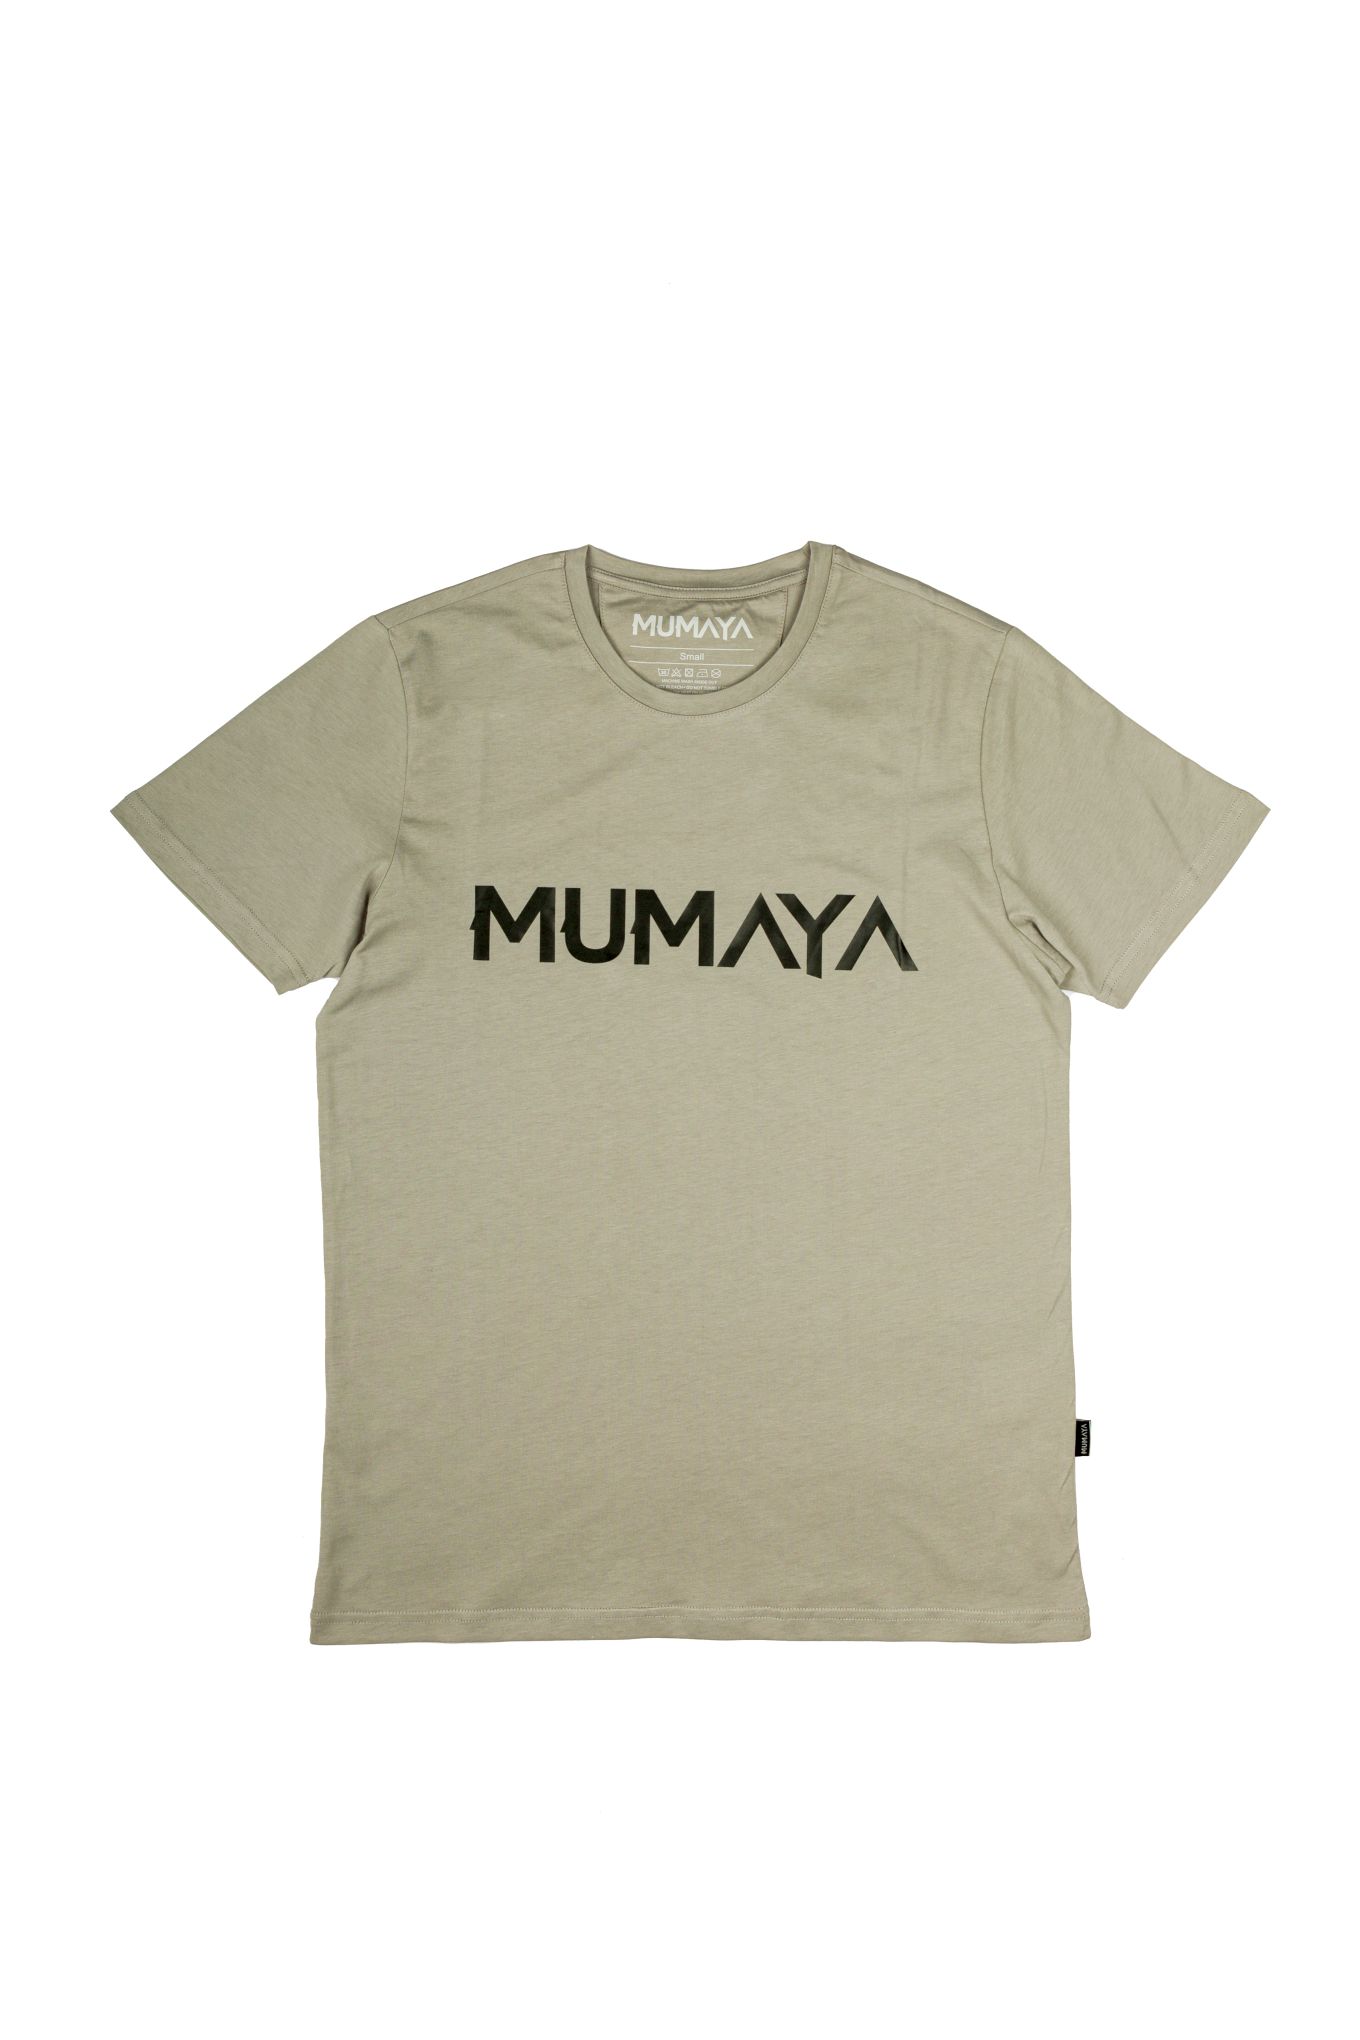 Mumaya BaselineShirt Grey